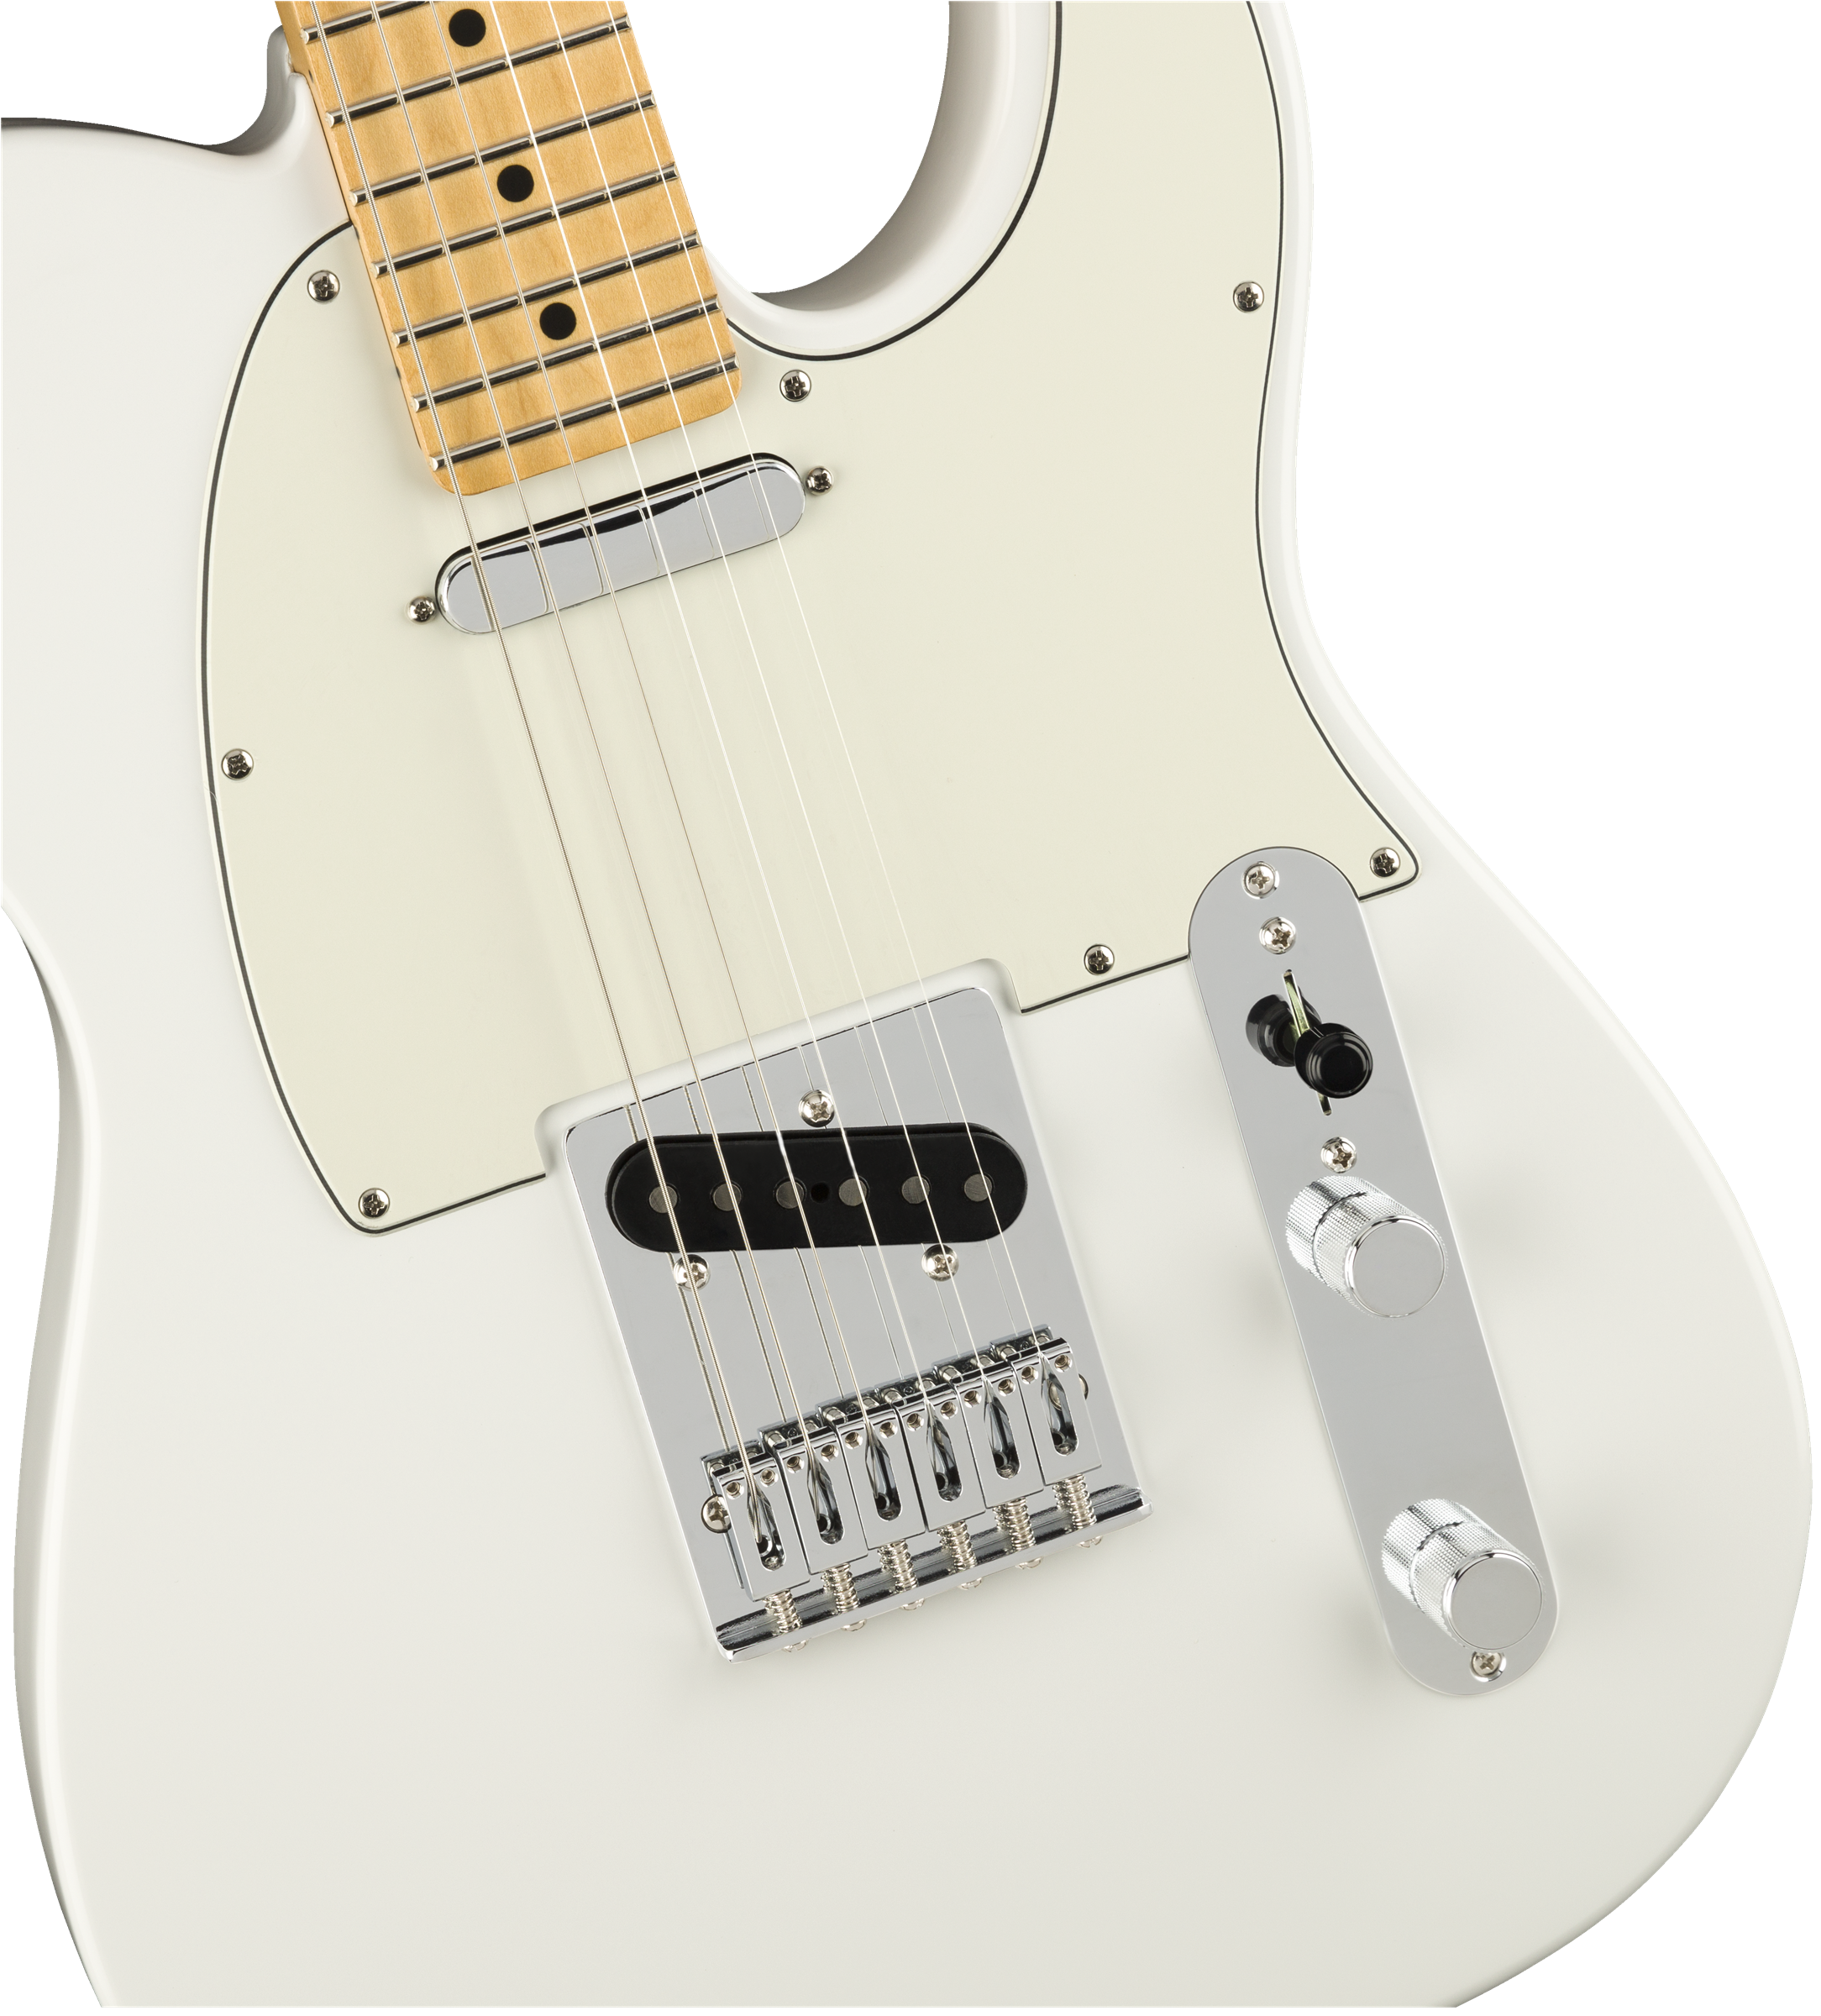 Fender Player Telecaster - Polar White